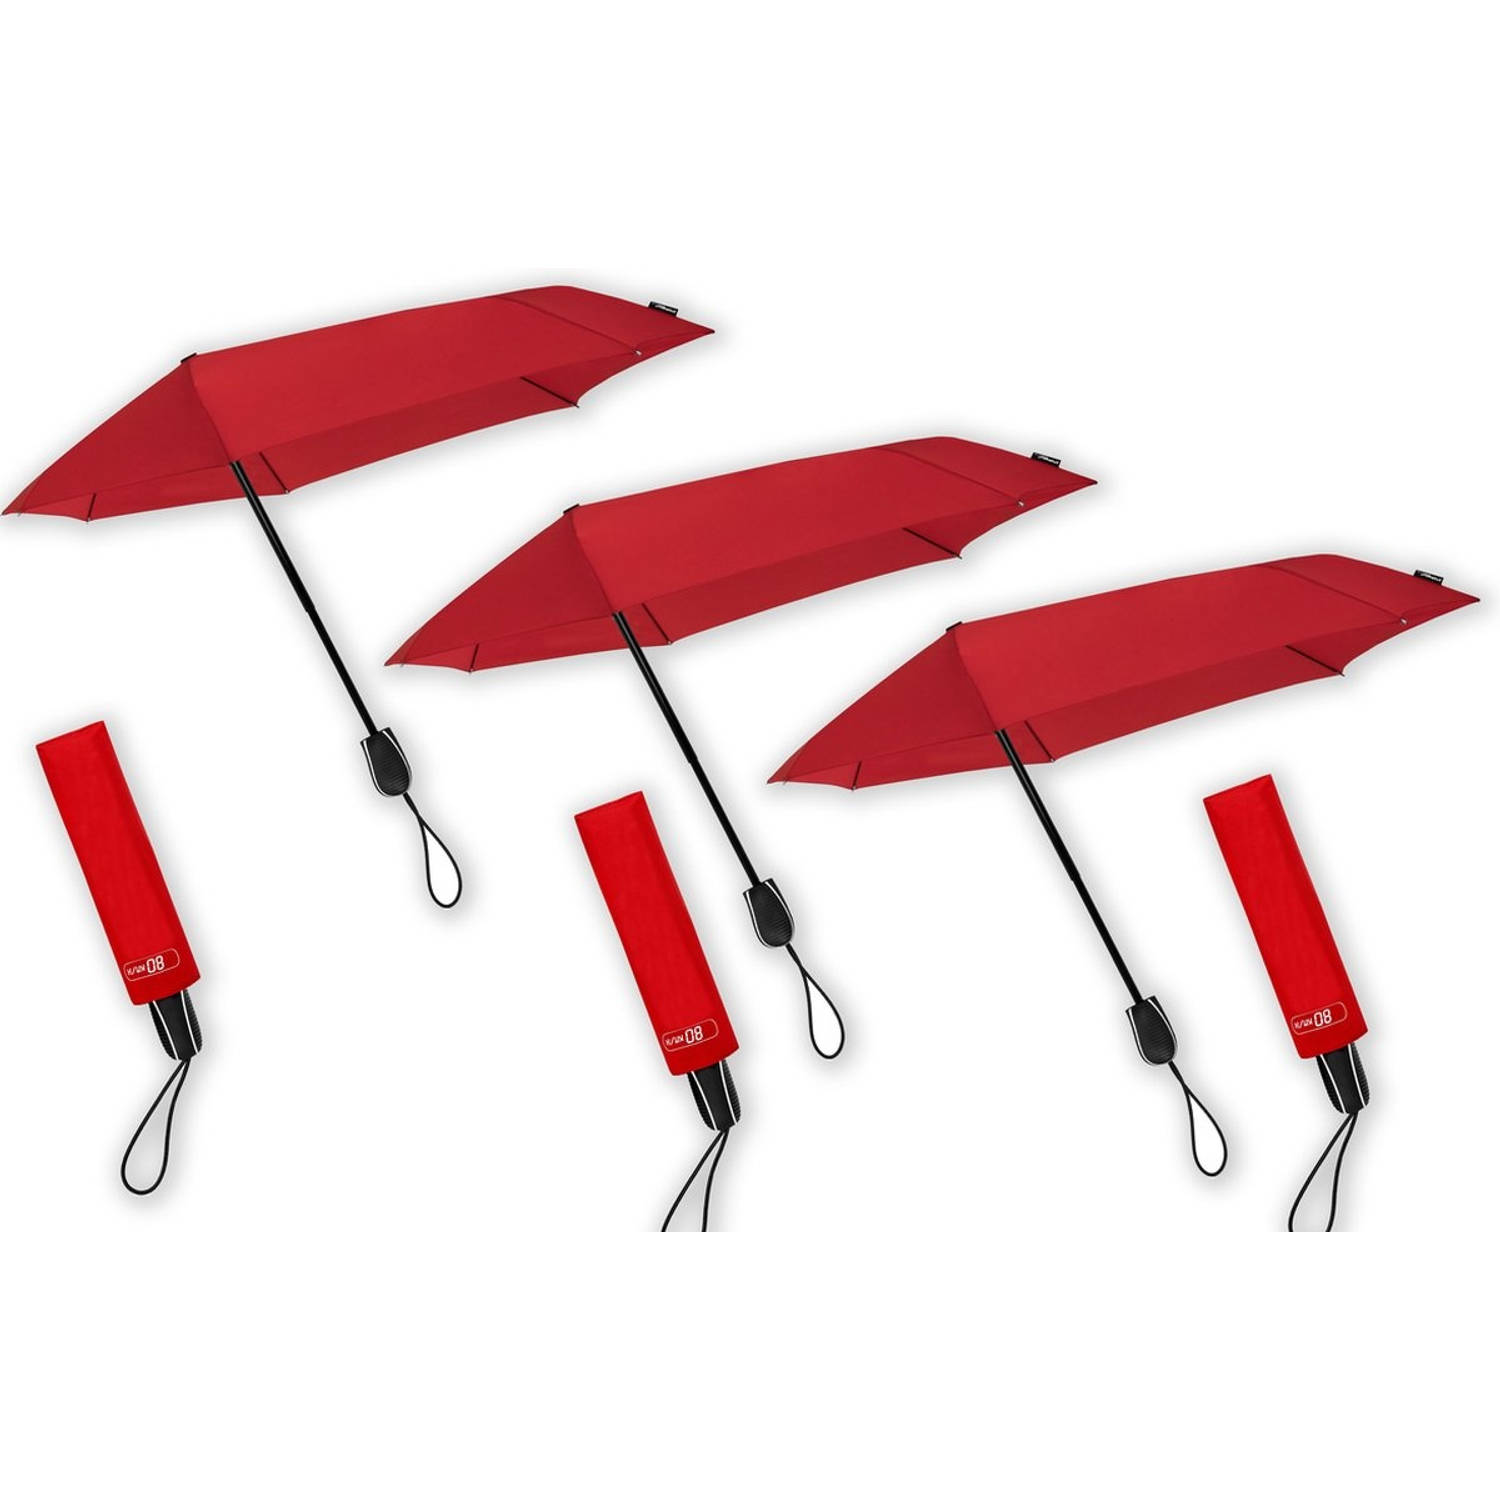 Paraplu tegen storm tot 80 km - 3 stuks in de verpakking - Stormparaplu geschikt voor Windvlagen tot 80km/h - Ø 100 cm - Rood